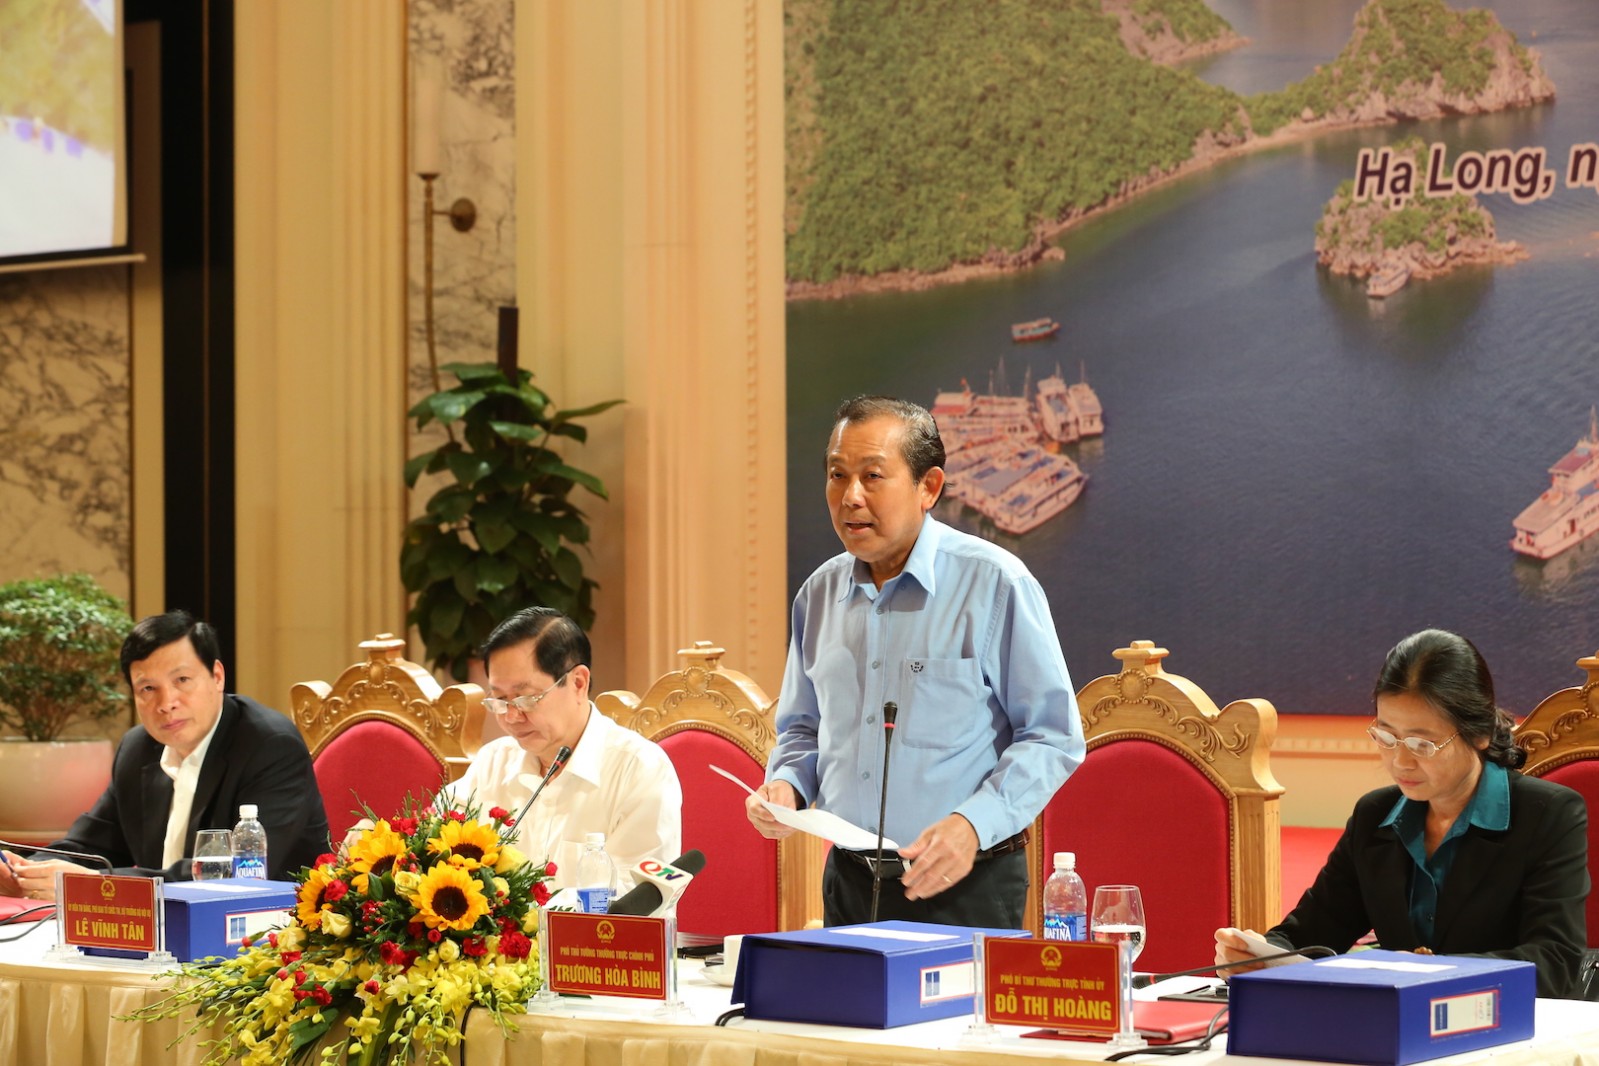 Phó Thủ tướng Thường trực Trương Hòa Bình làm việc với lãnh đạo chủ chốt tỉnh Quảng Ninh về Đề án xây dựng Đơn vị hành chính-kinh tế đặc biệt Vân Đồn. Ảnh: VGP/Lê Sơn.